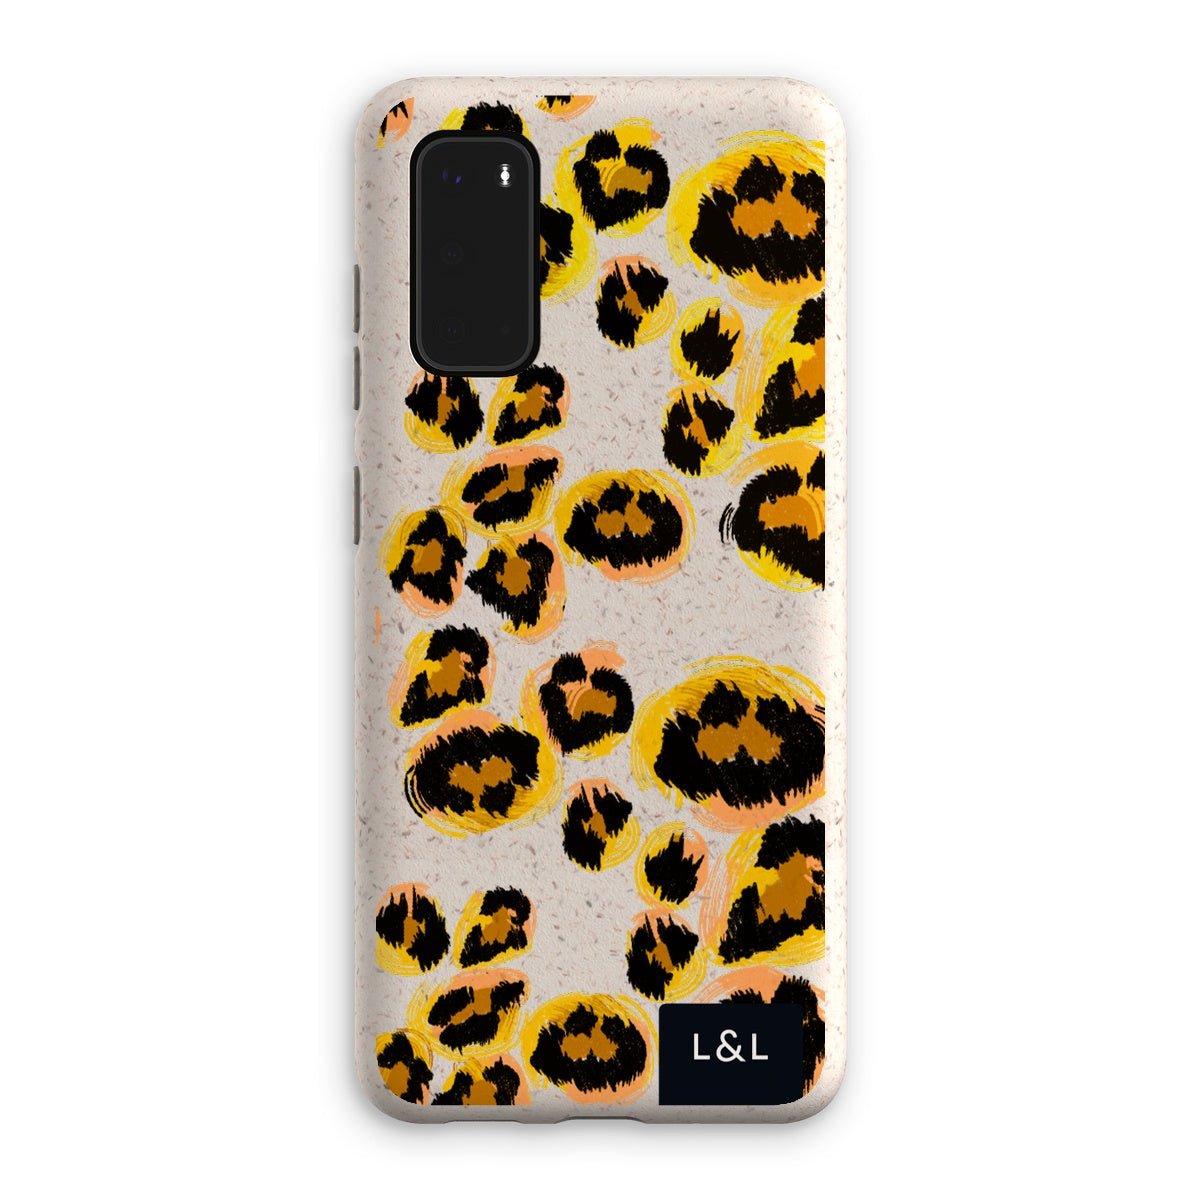 Leopard print Eco Phone Case - Loam & Lore